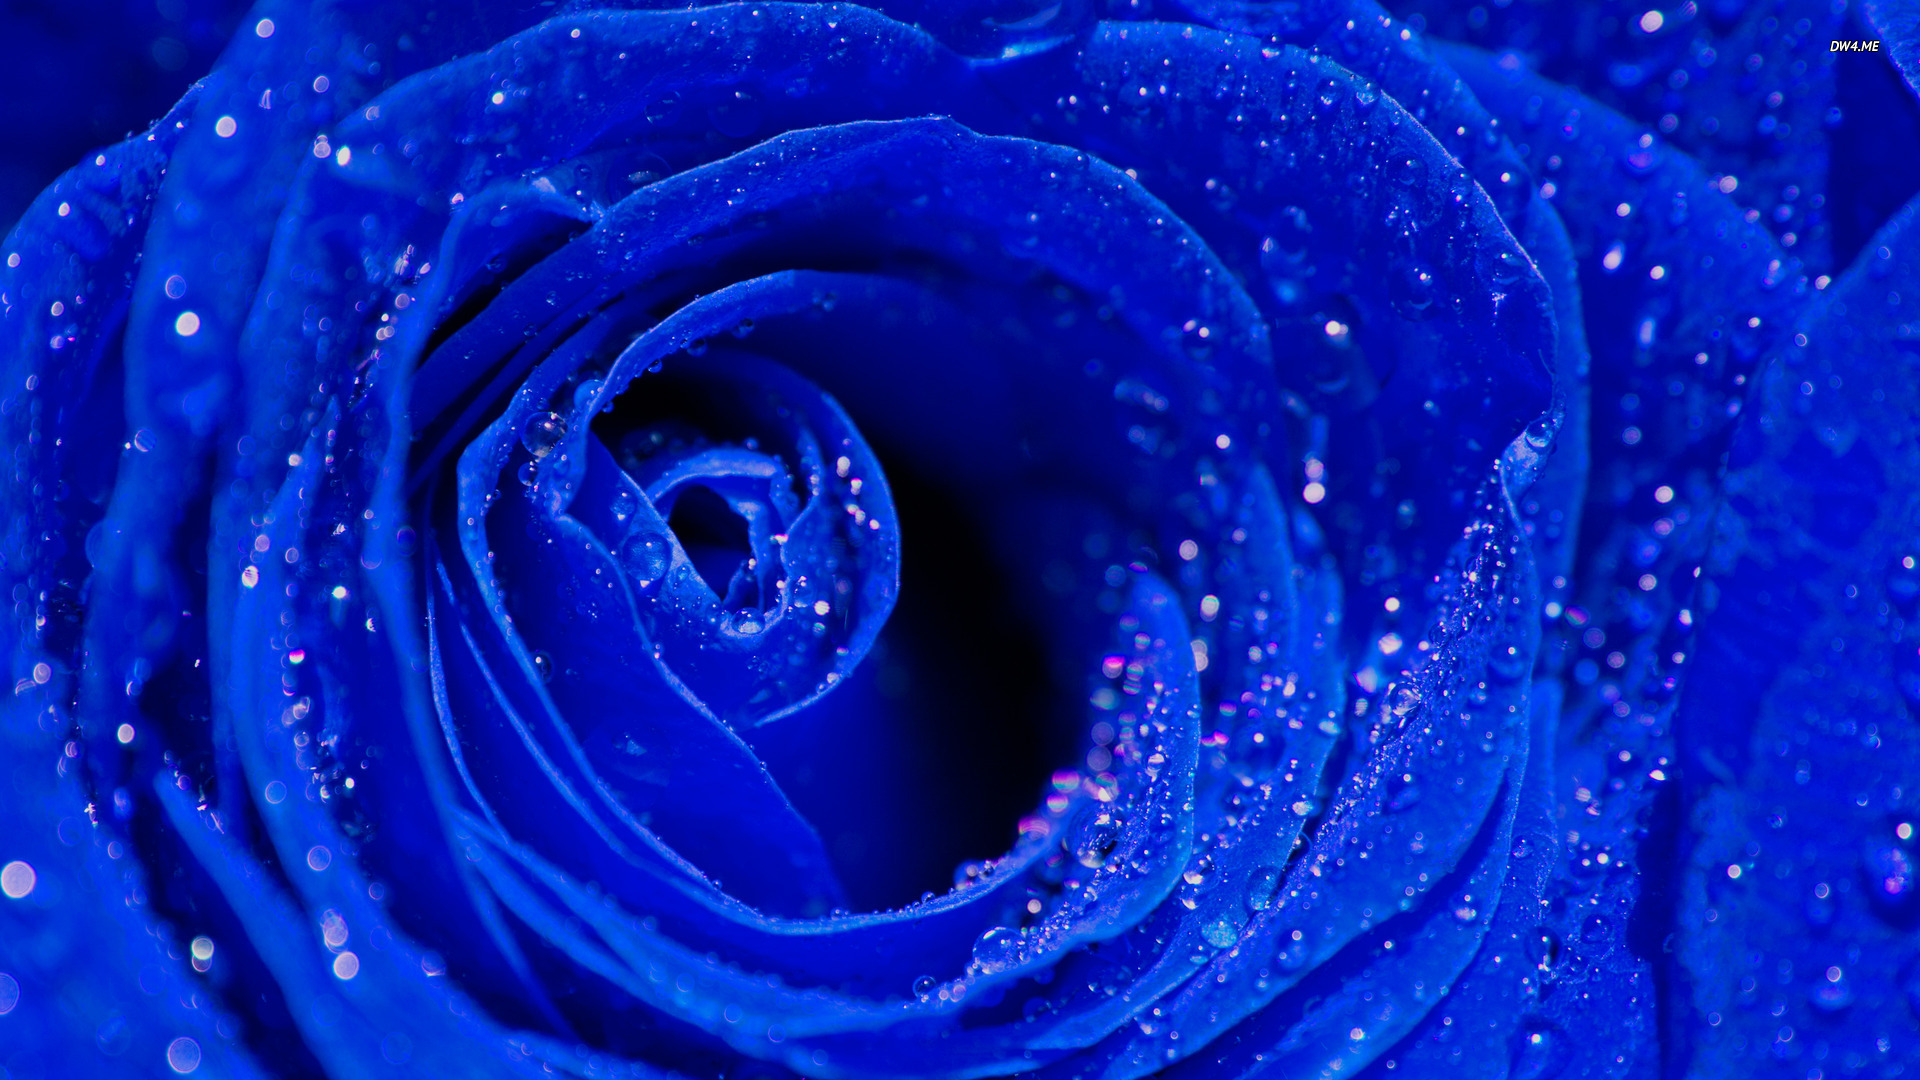 76+] Blue Roses Wallpaper - WallpaperSafari